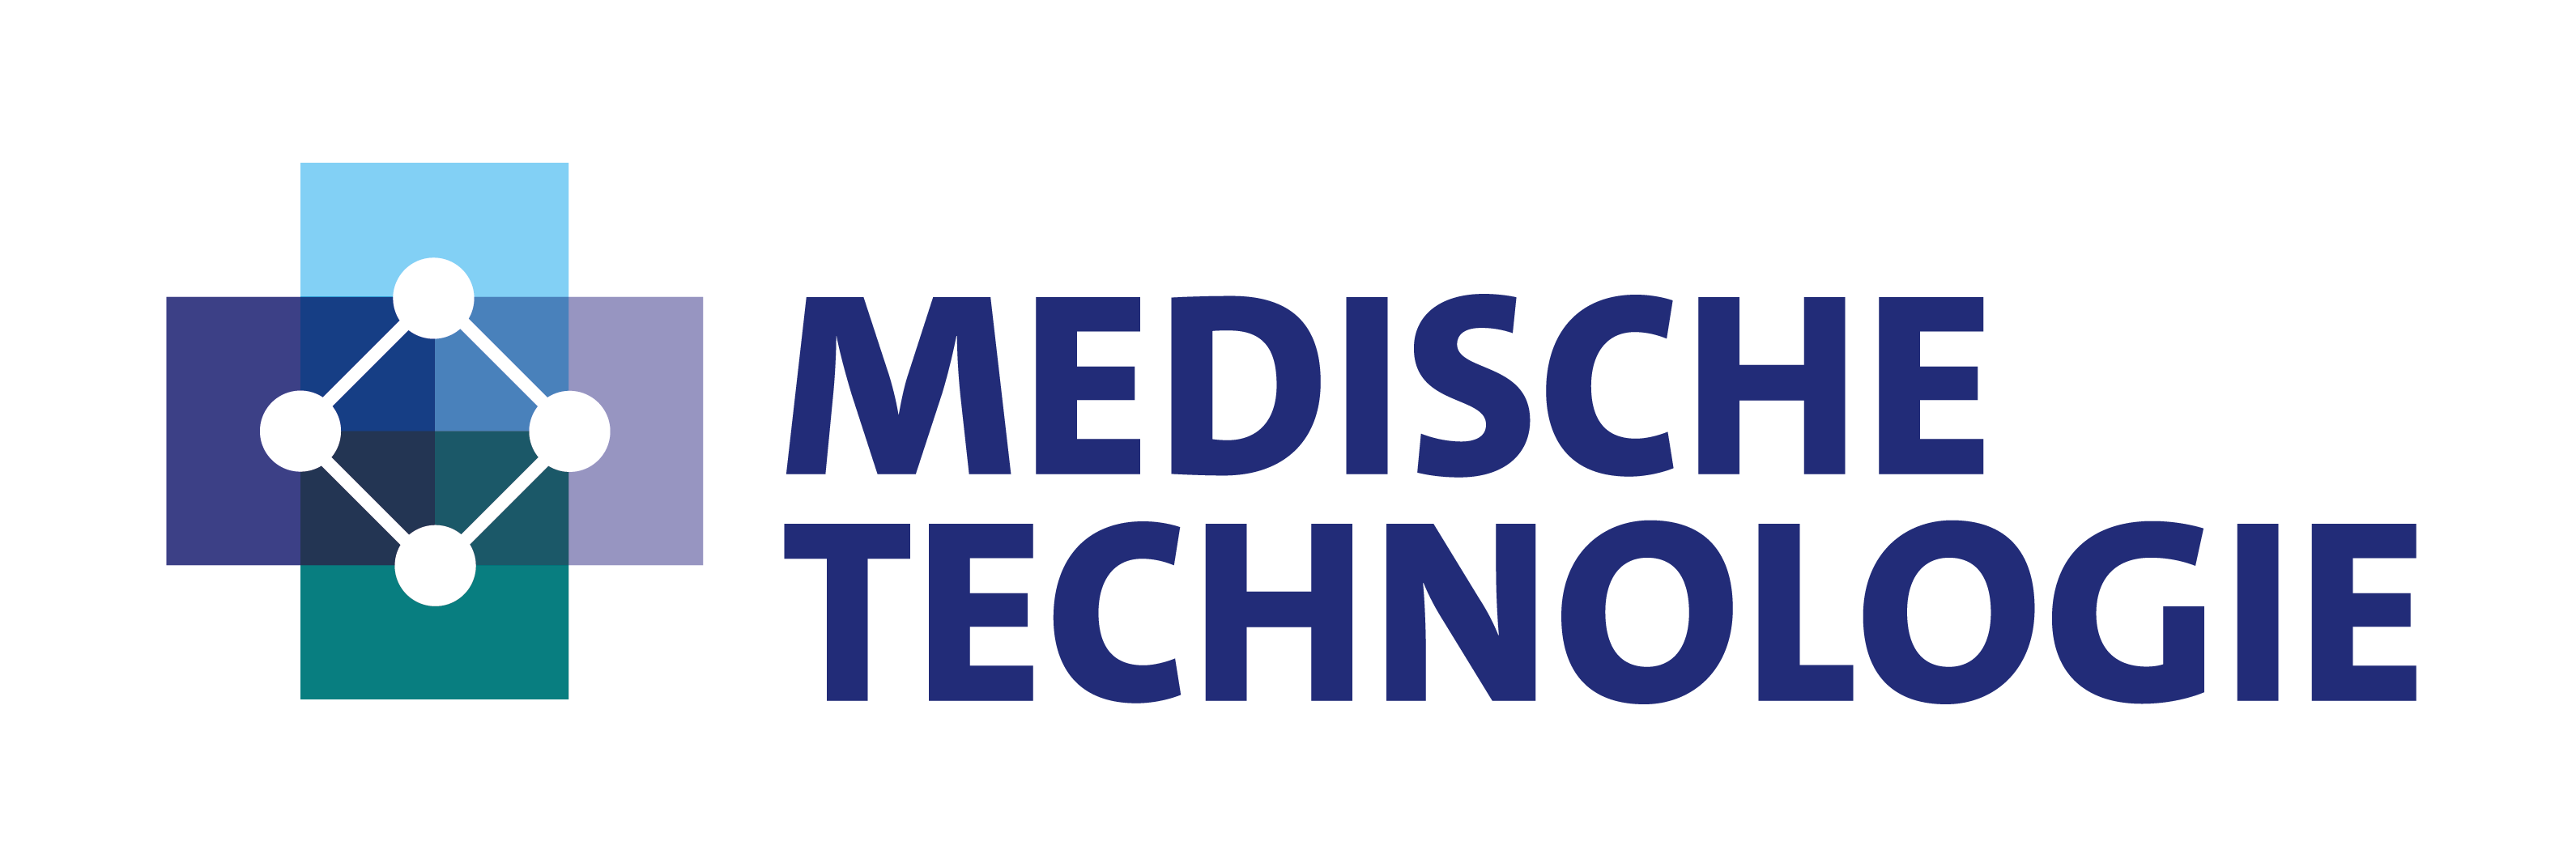 Erasmus MC Medische Technologie logo